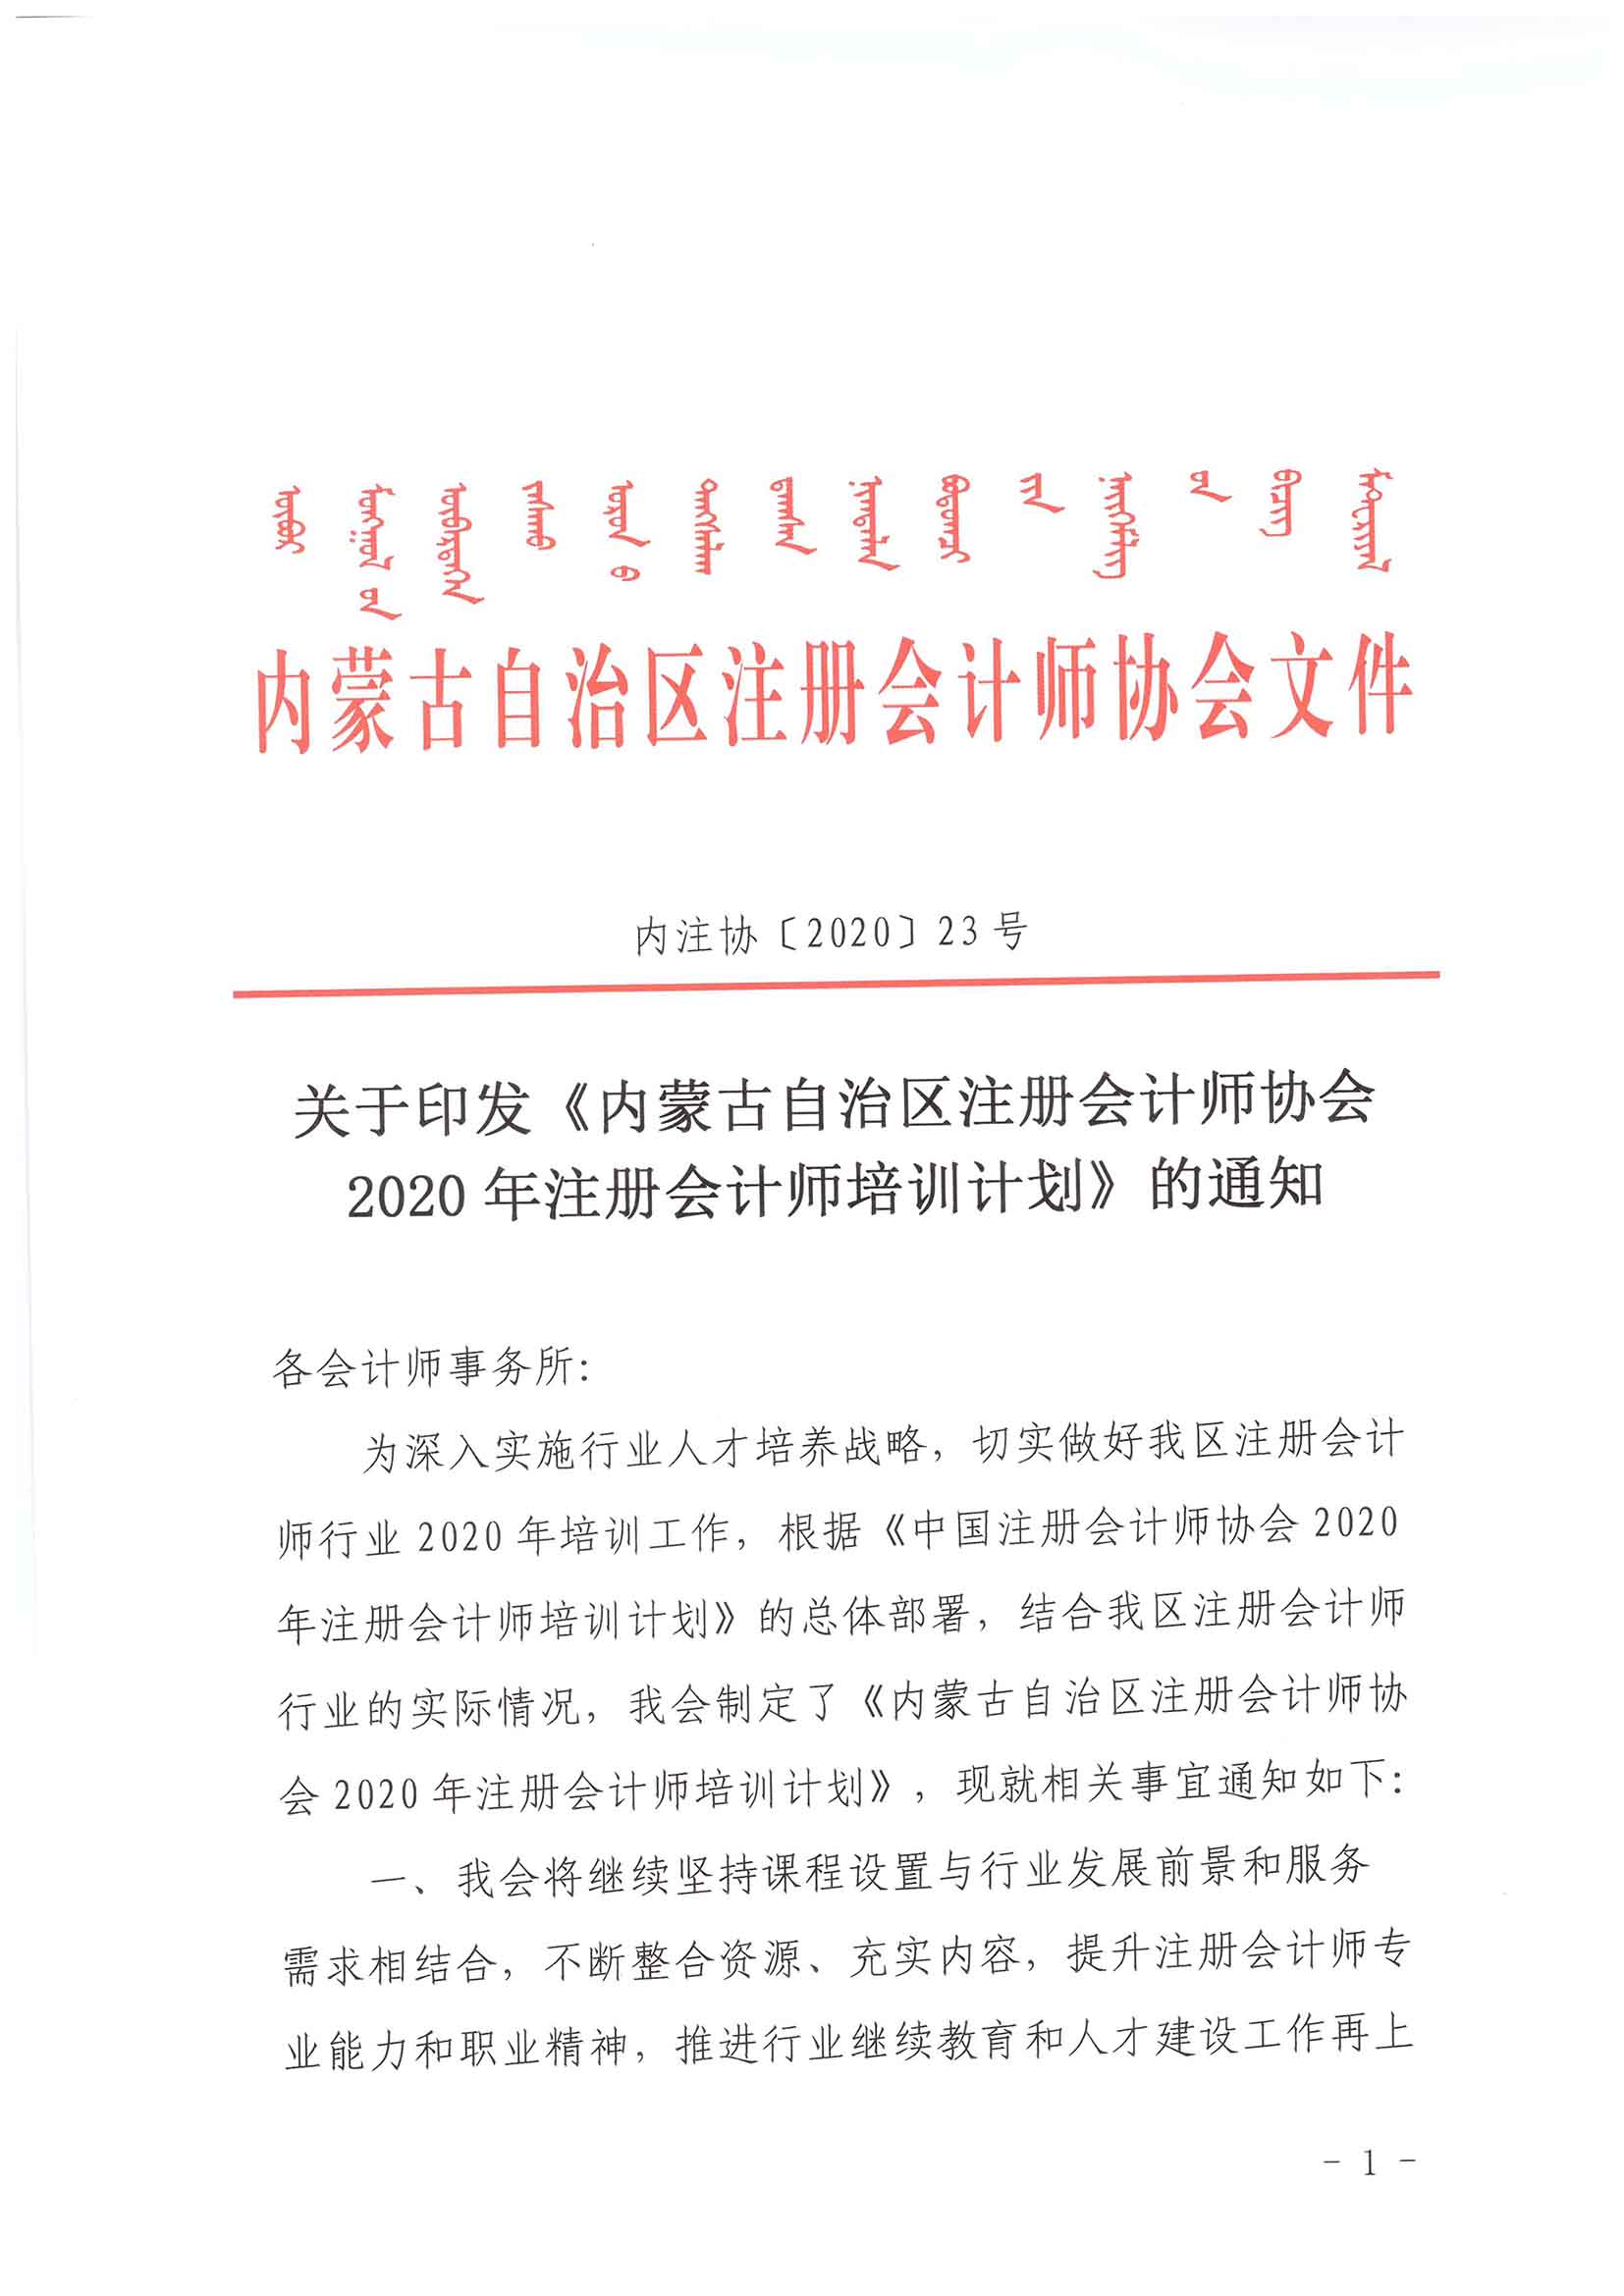 关于印发《内蒙古自治区注册会计师协会2020年注册会计师培训计划》的通知_页面_1.jpg